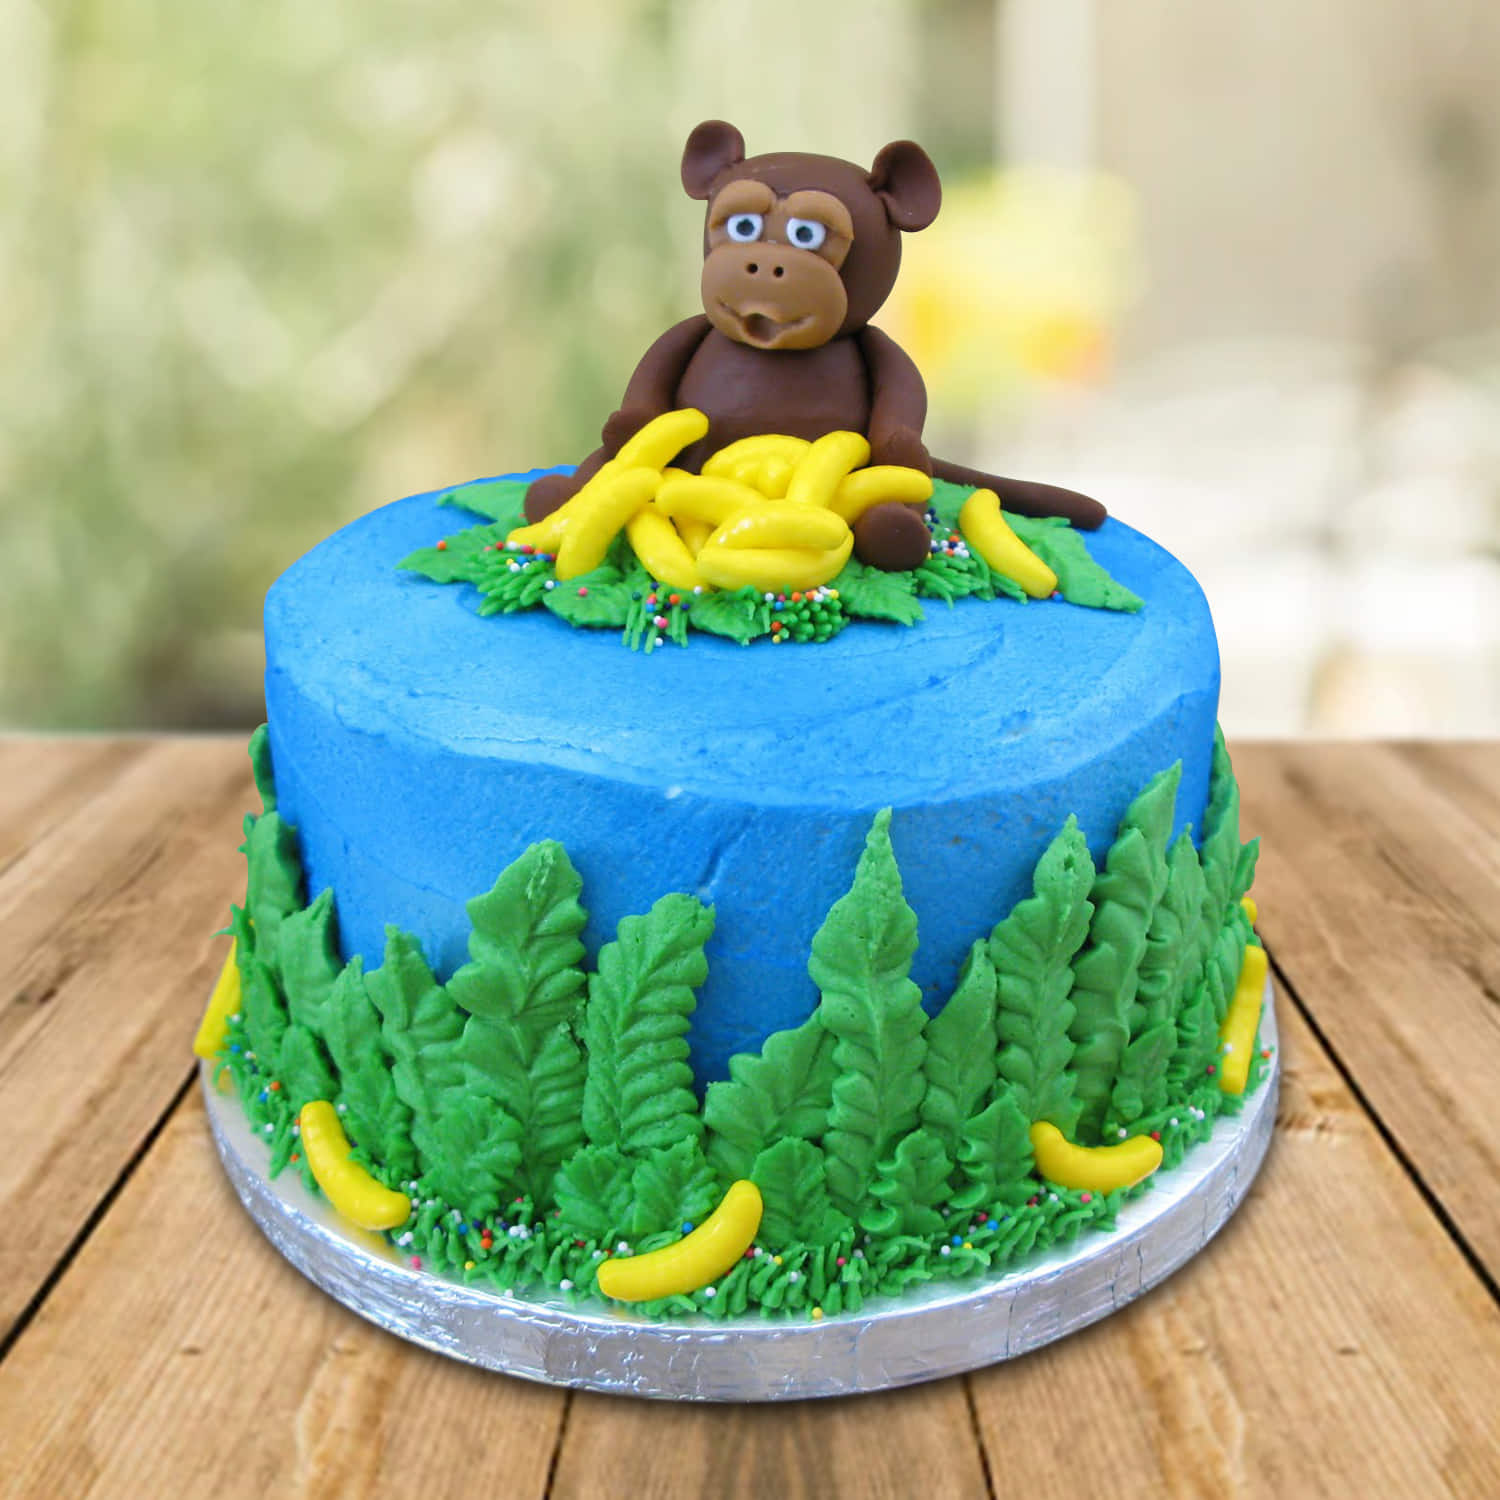 Monkeys 1st Birthday Cake - Decorated Cake by Lori - CakesDecor